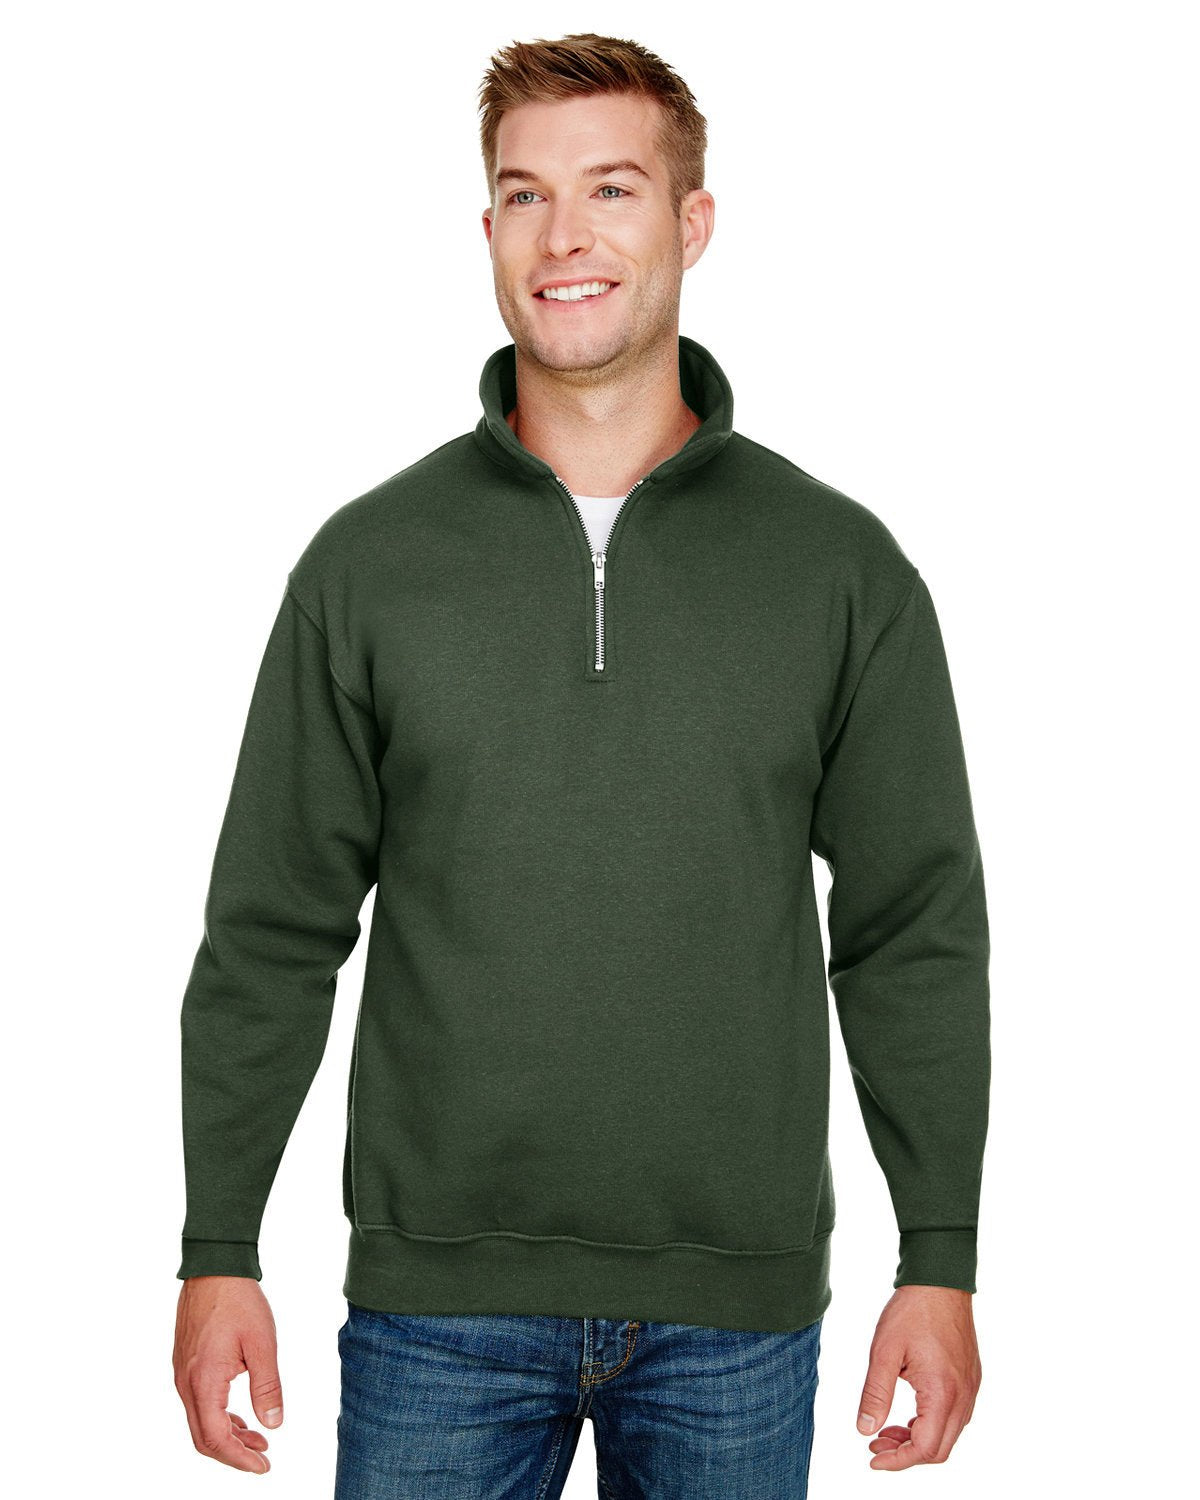 BA920-Bayside-HUNTER GREEN-Bayside-Sweatshirts-1